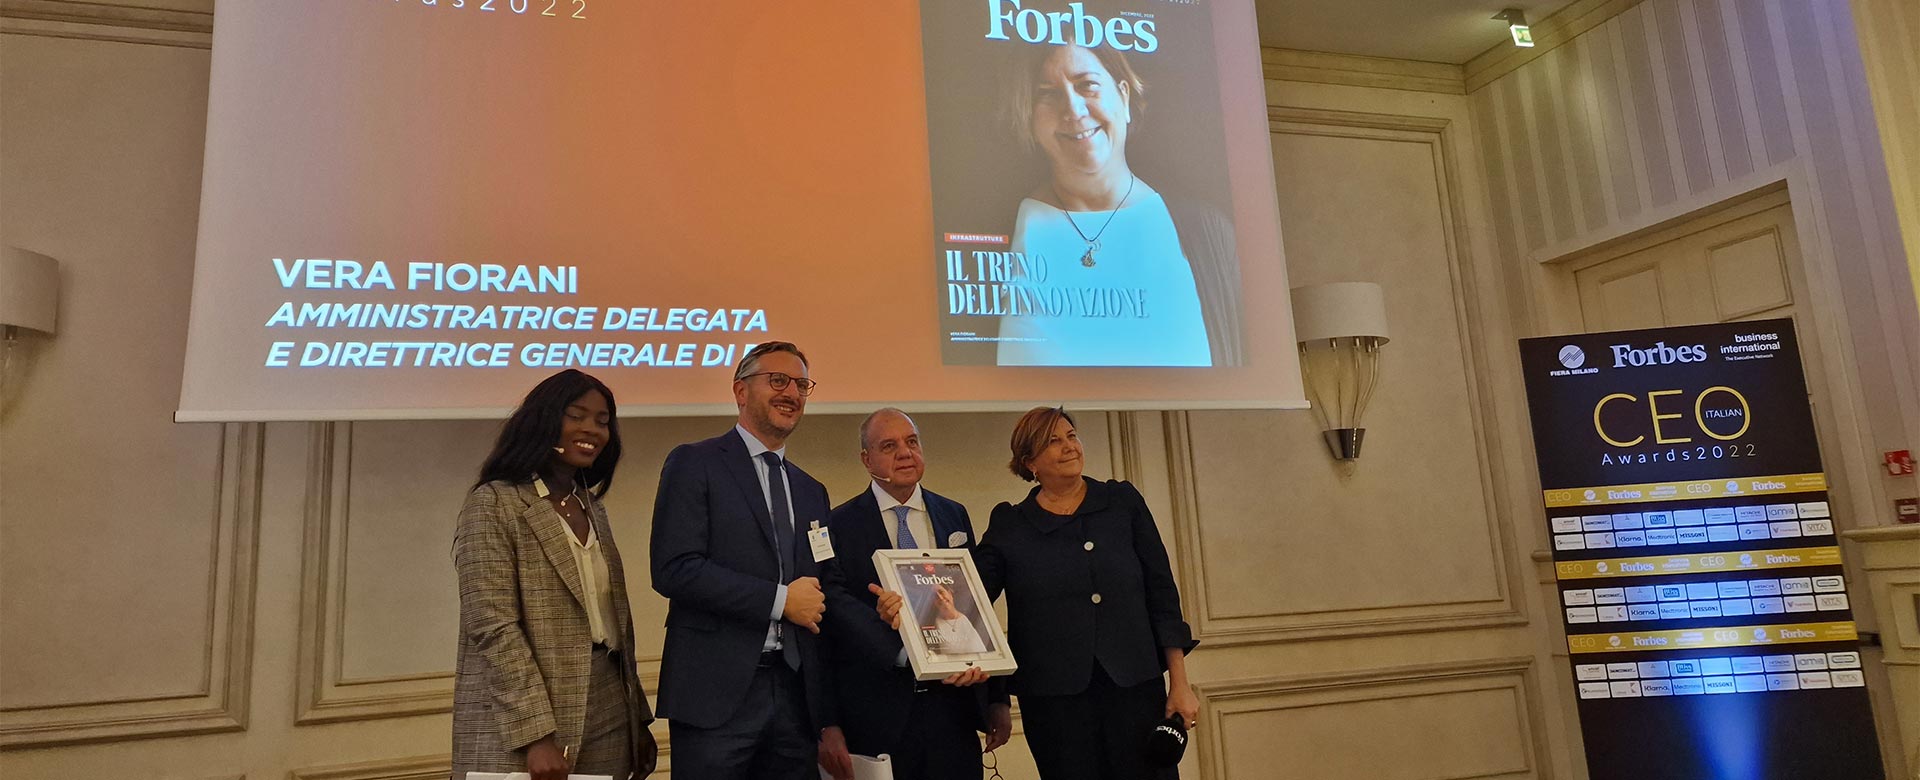 L’AD di RFI Vera Fiorani riceve il premio CEO Italian Awards 2022